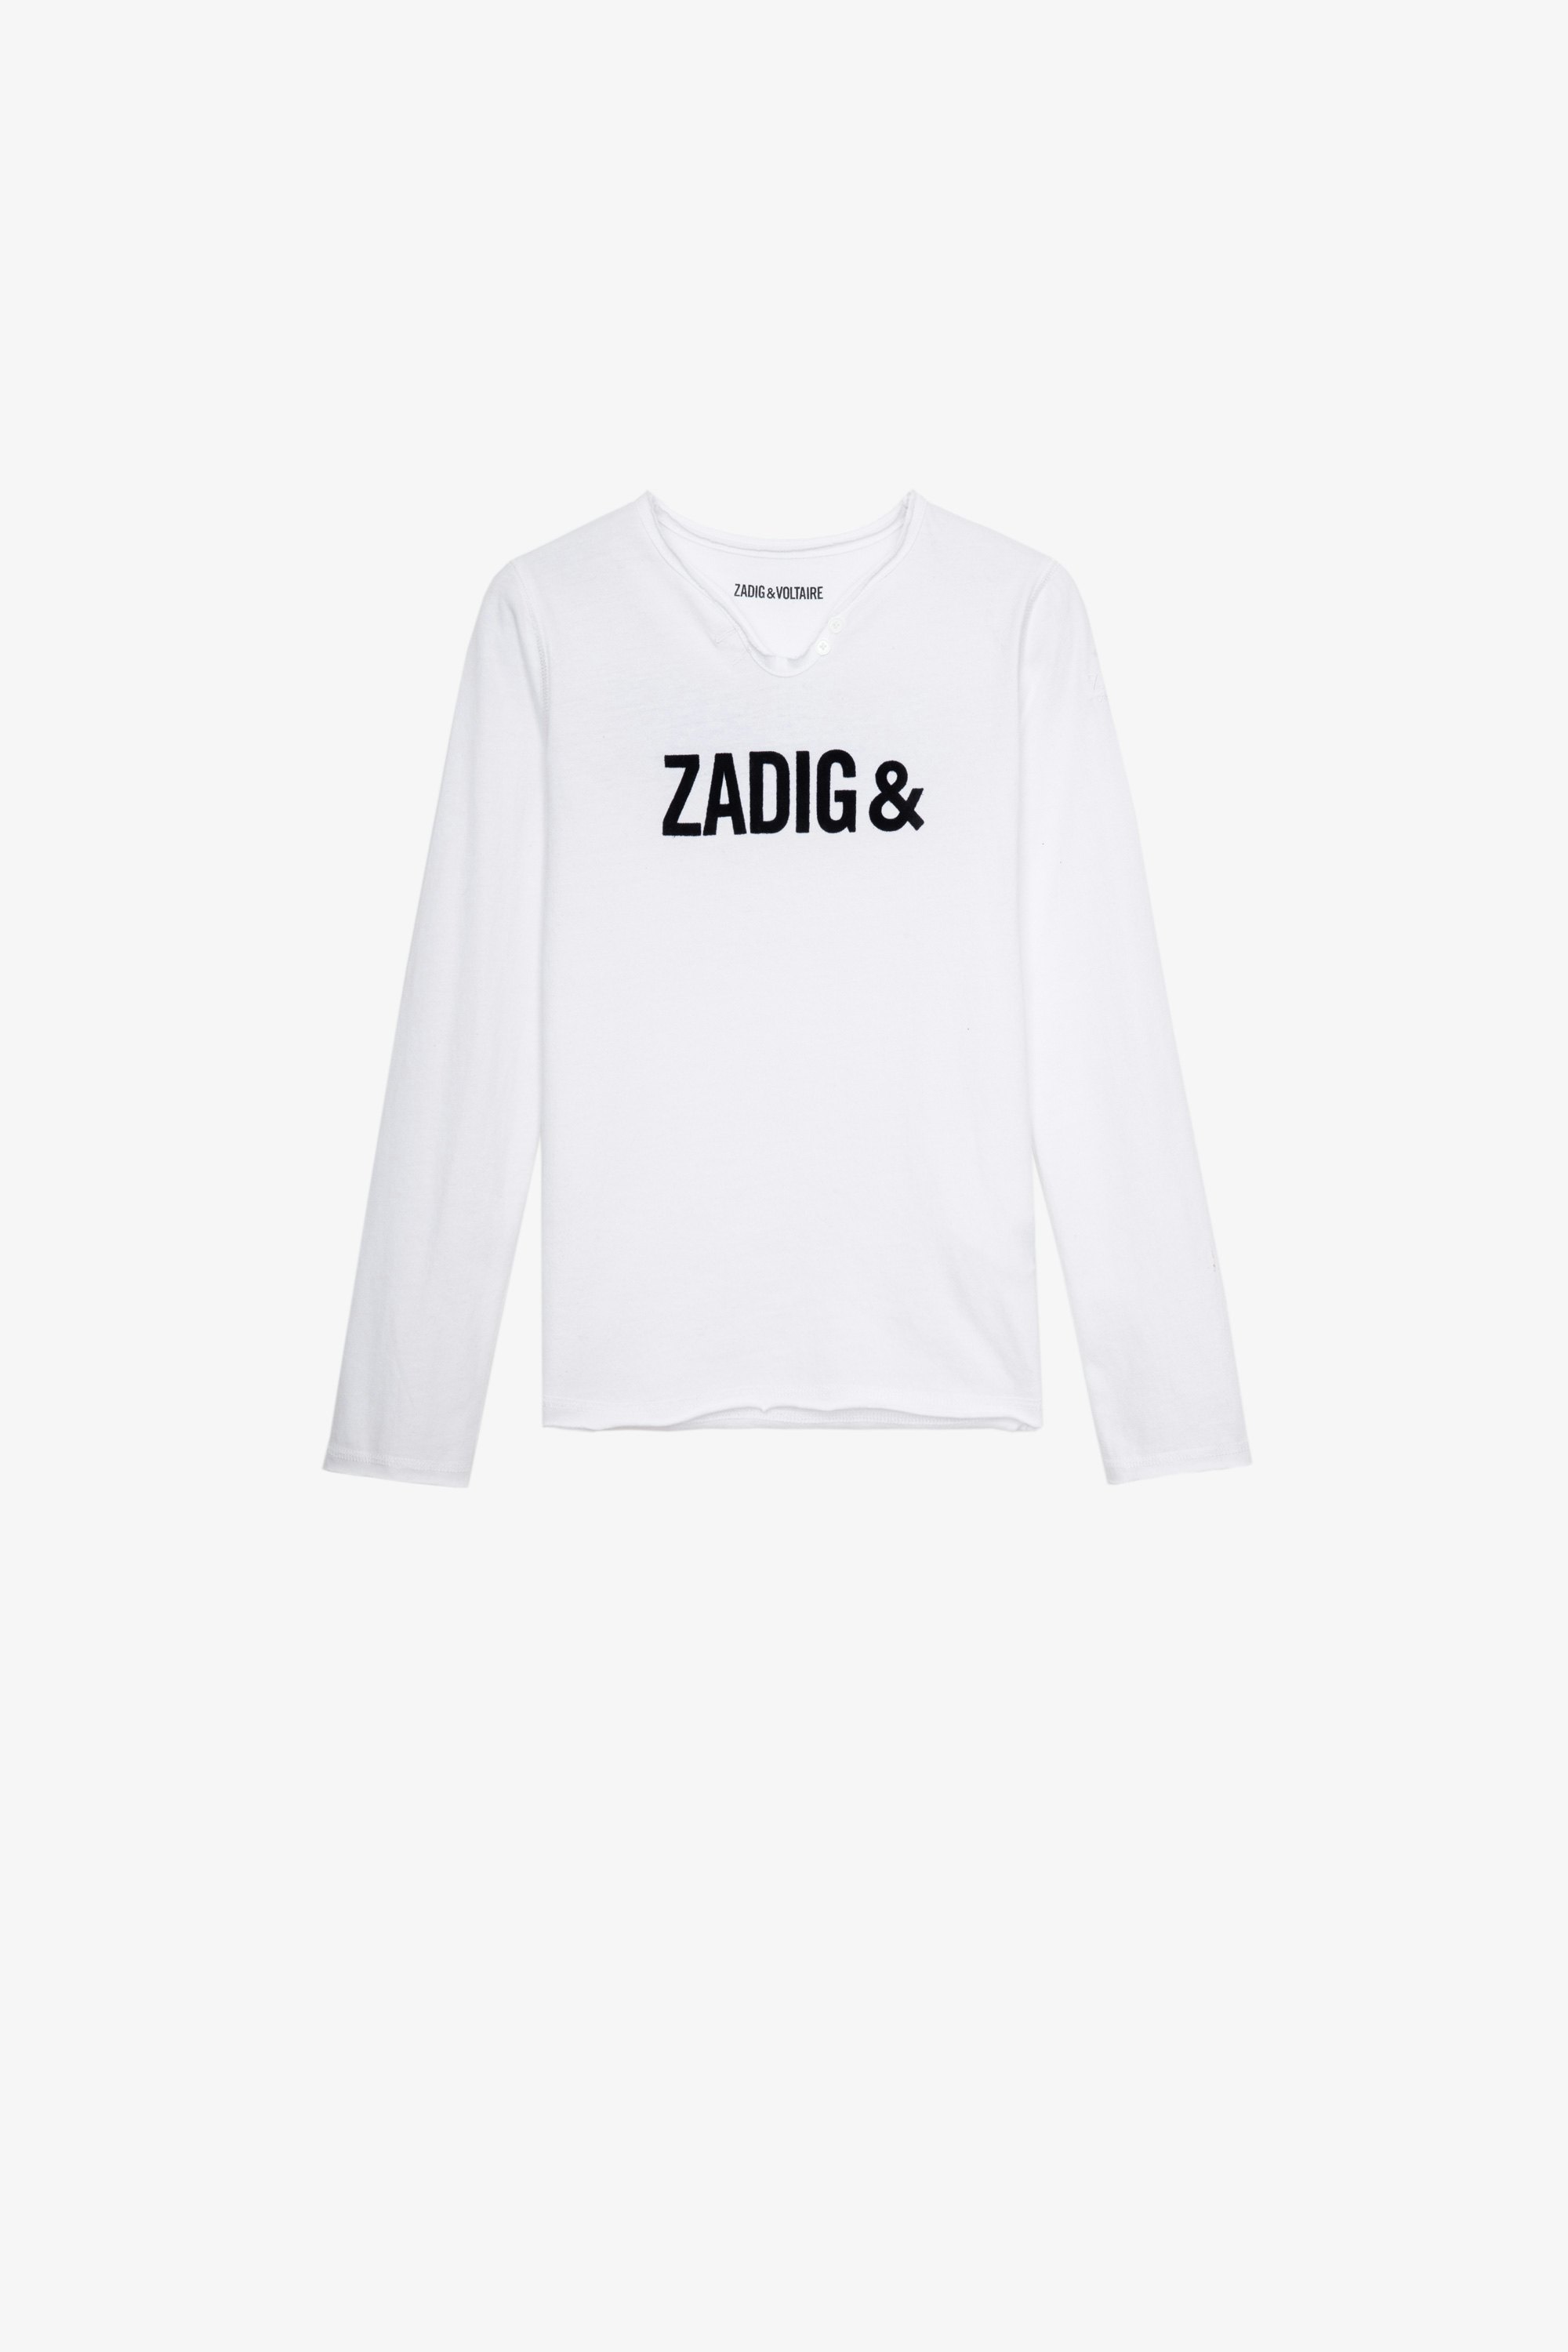 Camiseta Boxer Infantil  Camiseta blanca de algodón de manga larga y cuello panadero infantil con estampado «Zadig&Voltaire» 